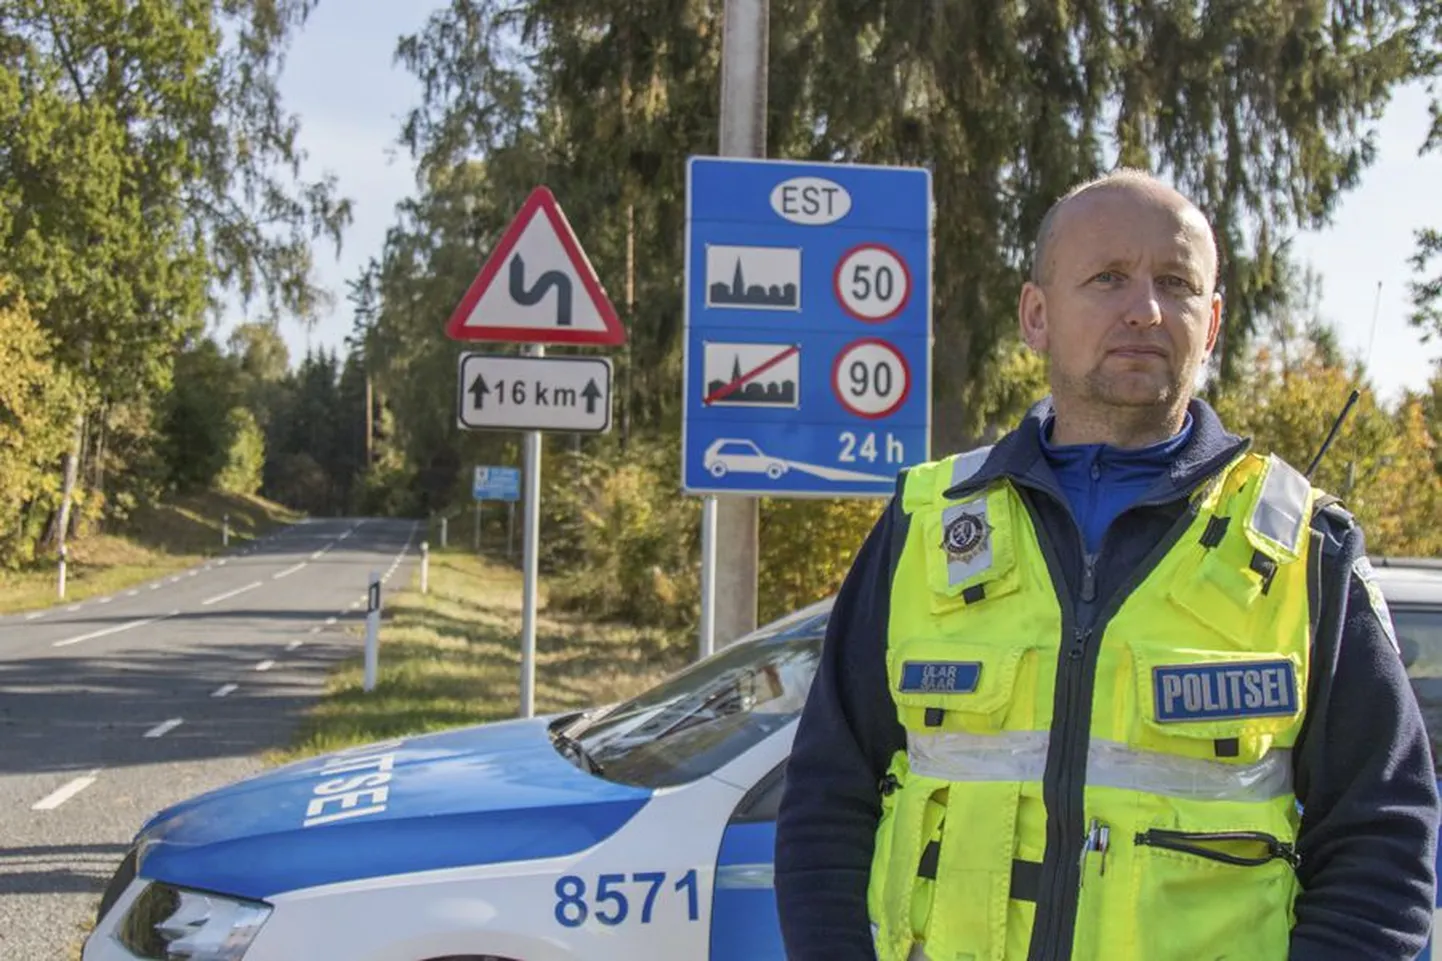 Viljandi politseijaoskonna välijuht Ülar Saar ootas eile Lilli endise piiripunkti juures Lätist saabuvaid sõidukeid. Ta kiitis patrullimiseks sobivat ilusat ilma.